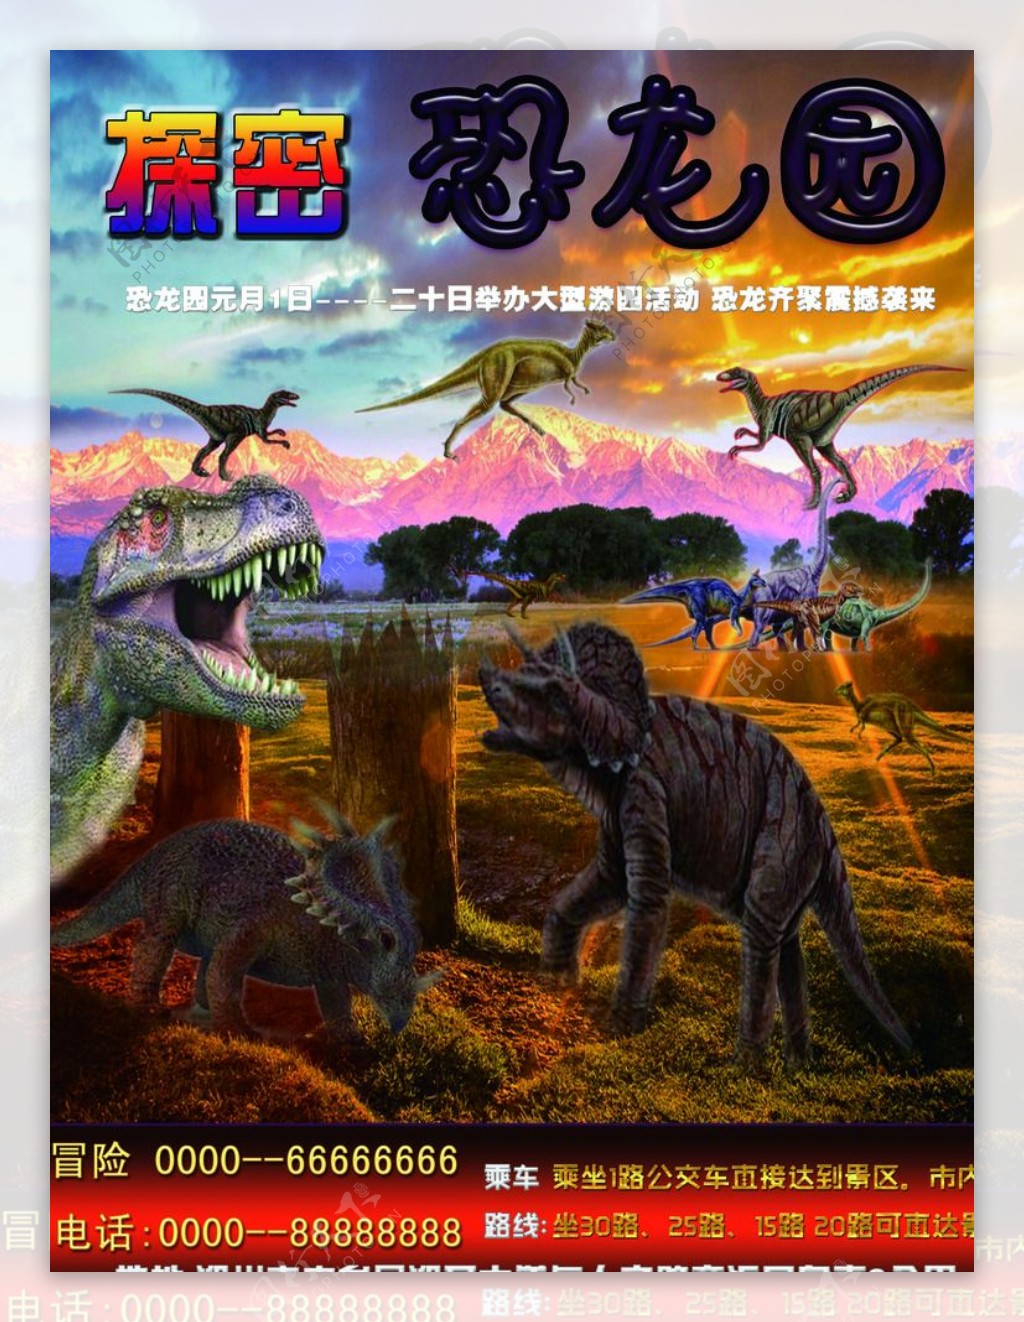 恐龙公园大型宣传海报设计